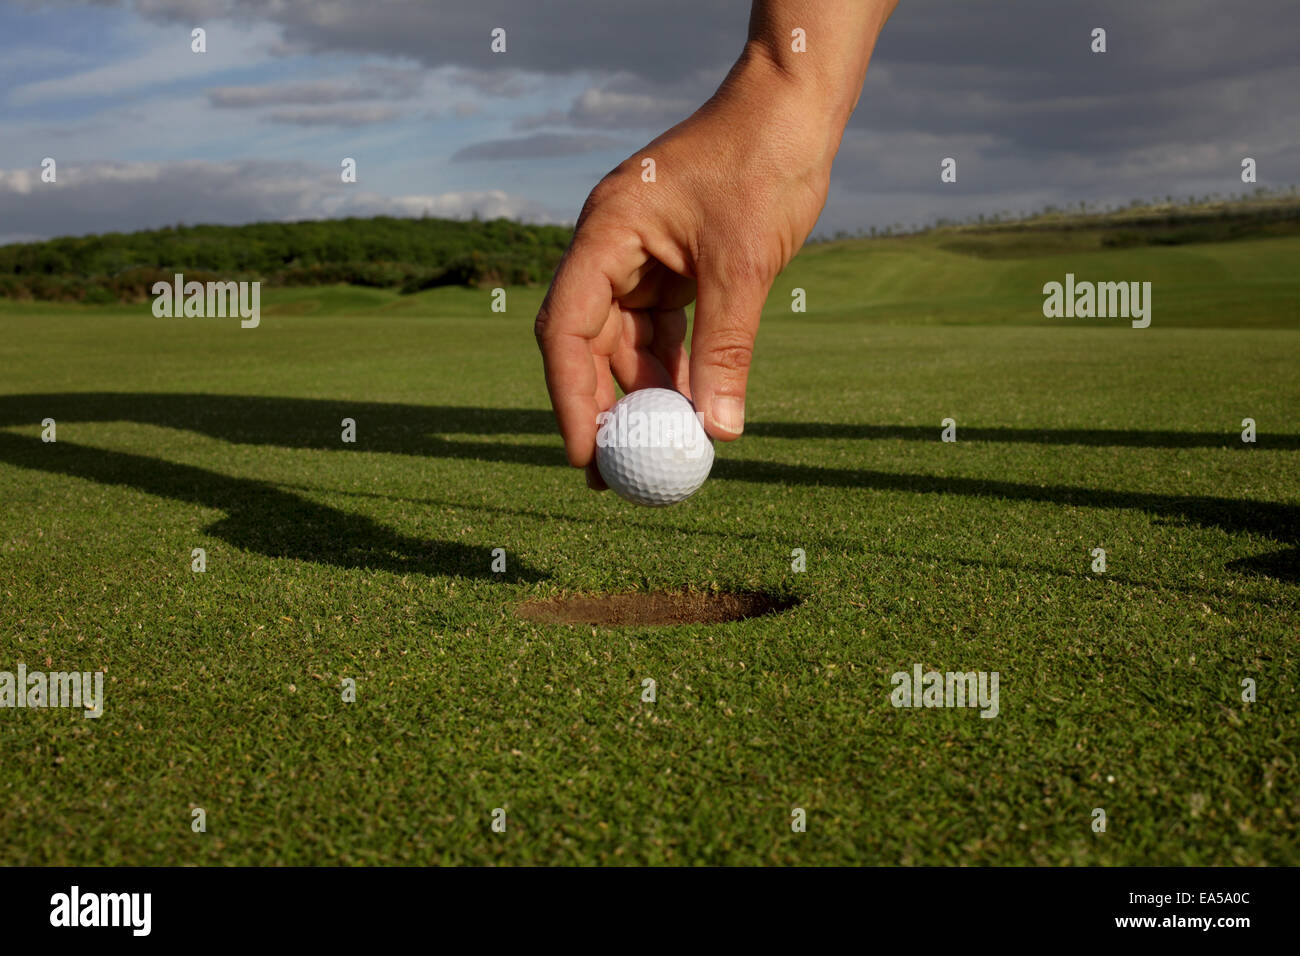 Un tir de ramasser la balle de golf Banque D'Images